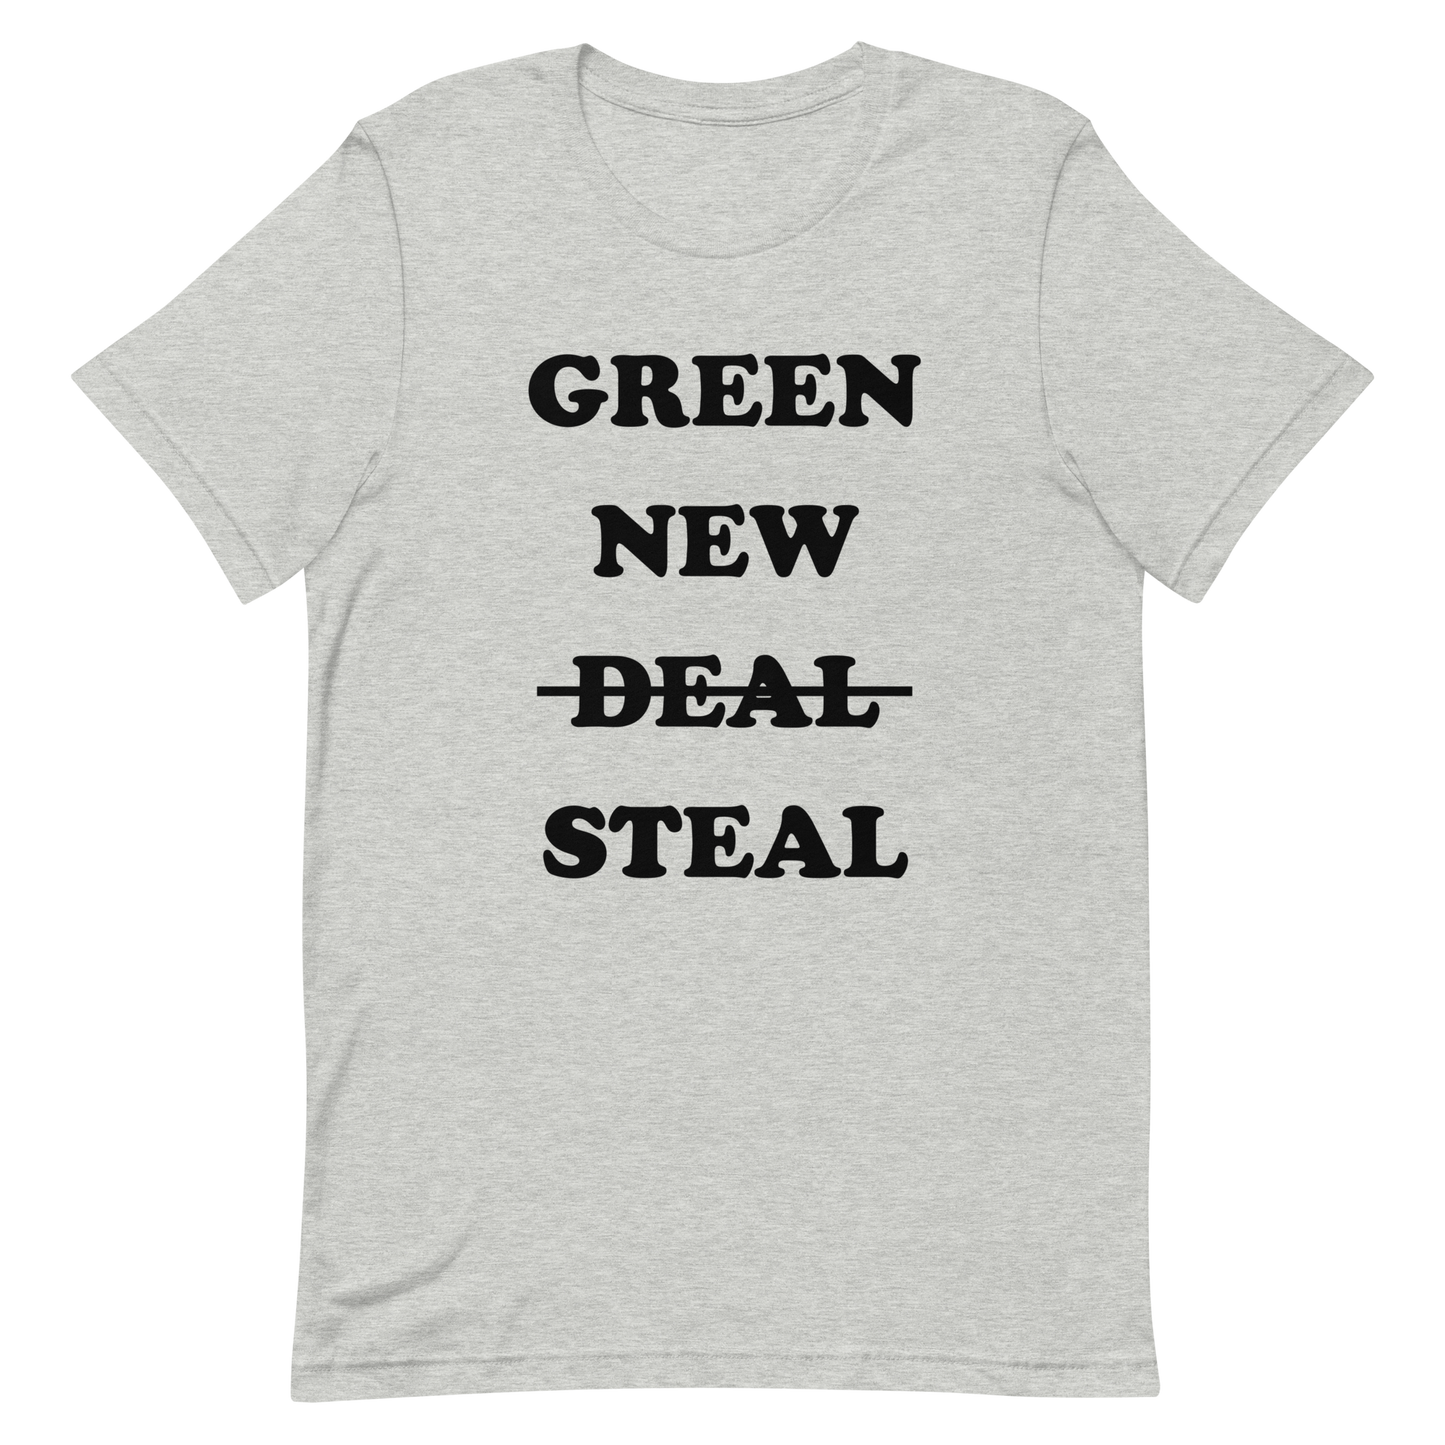 Green New Steal T-shirt